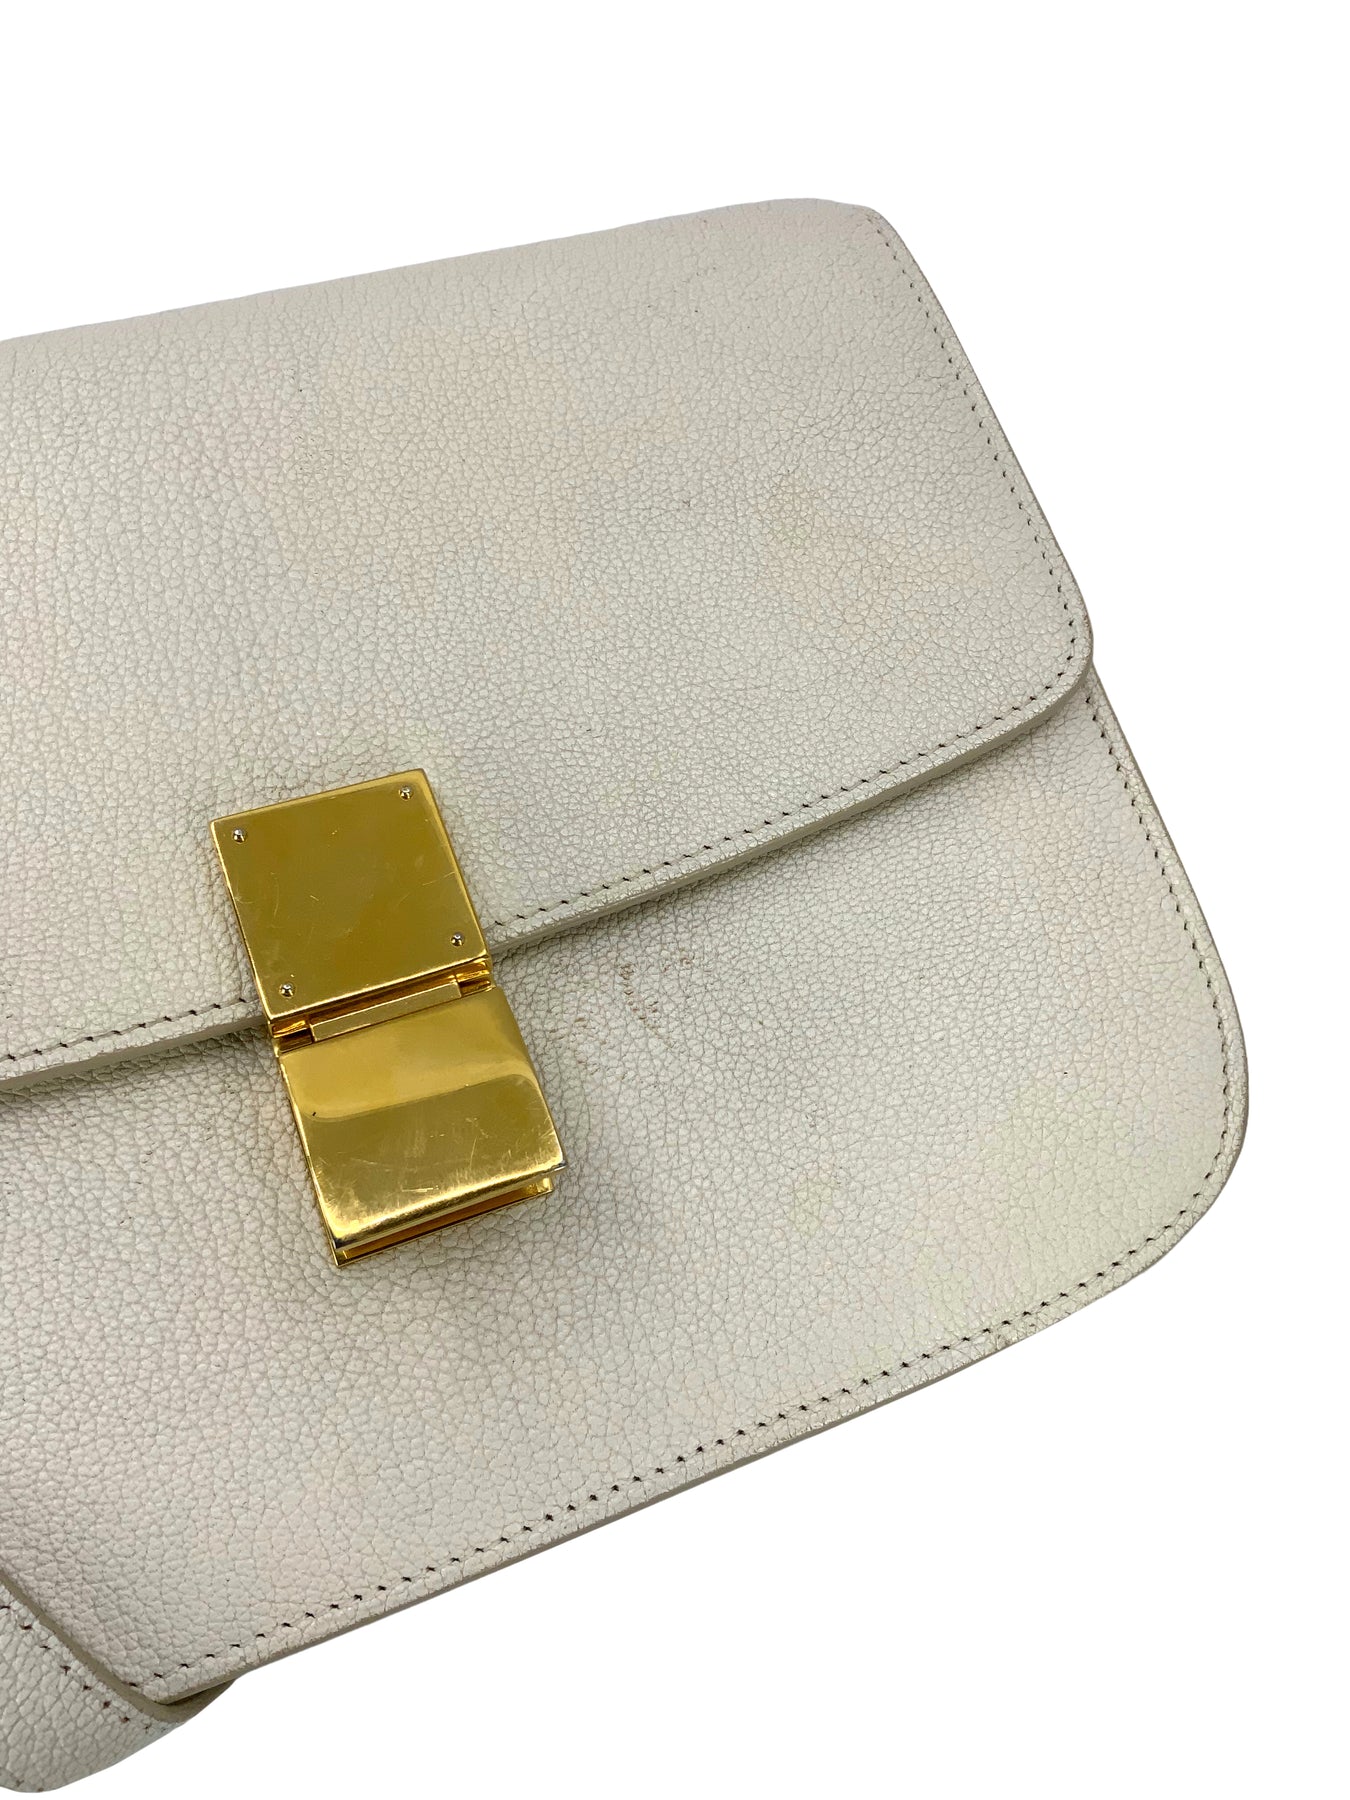 Celine Small Classic Box Calf Leather Flap Shoulder Bag Antique